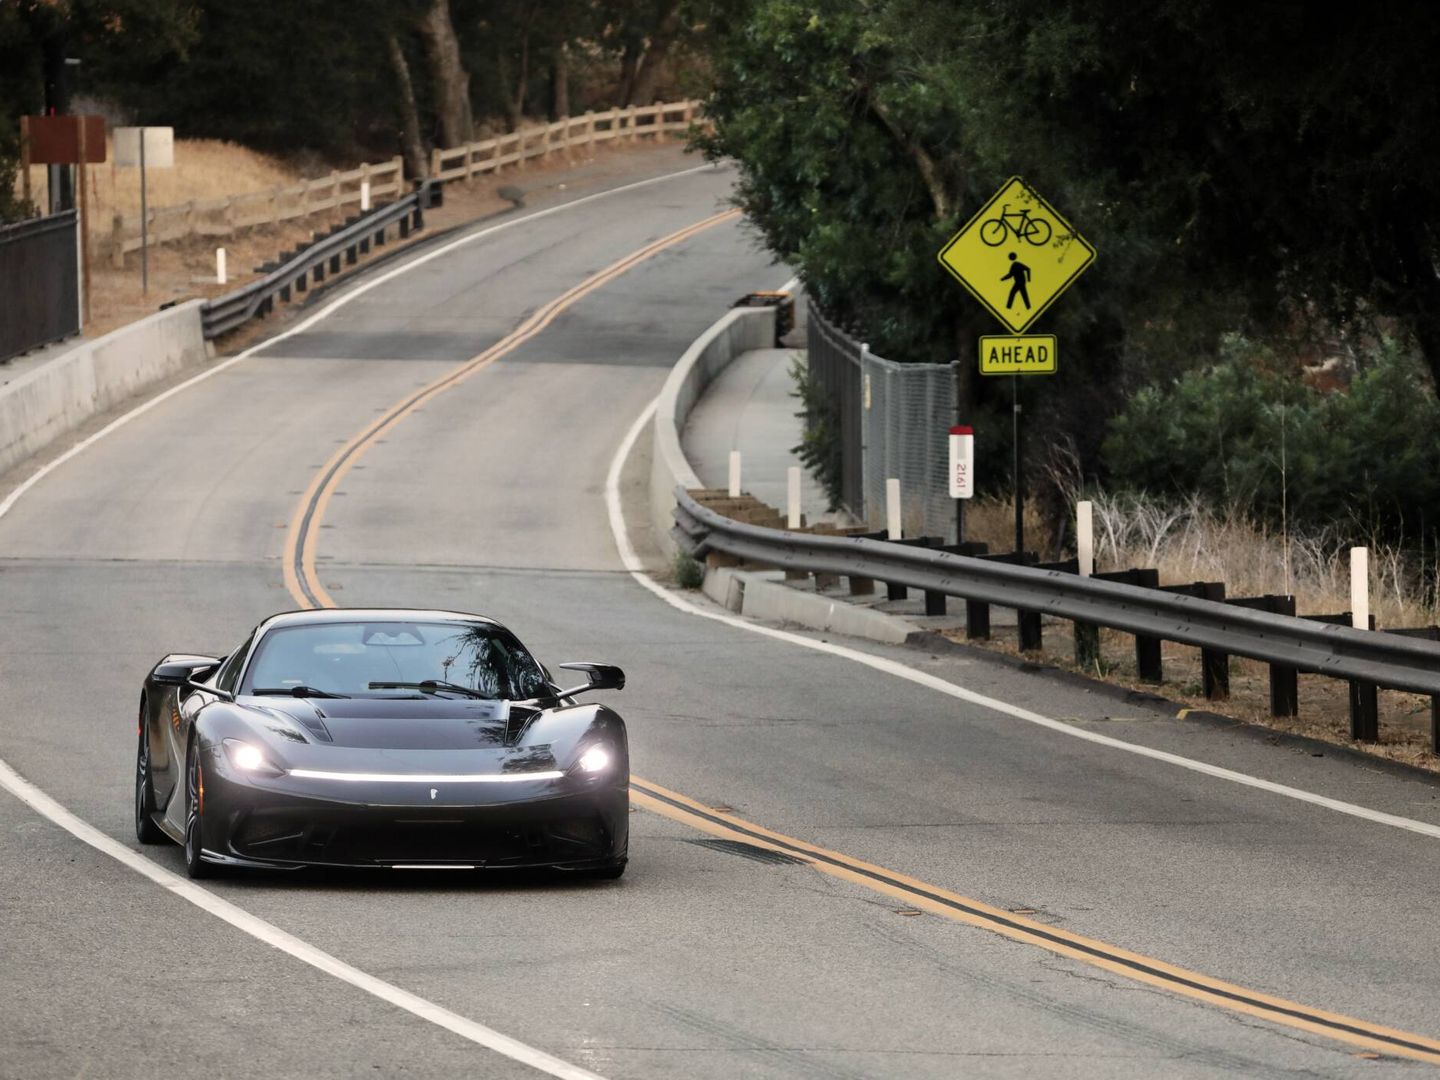 California ha sido el primer lugar del mundo donde ha rodado un Battista de producción. Anuncia 350 km/h de punta, aunque los límites en esas carreteras no alcanzan ni un tercio de esa cifra.